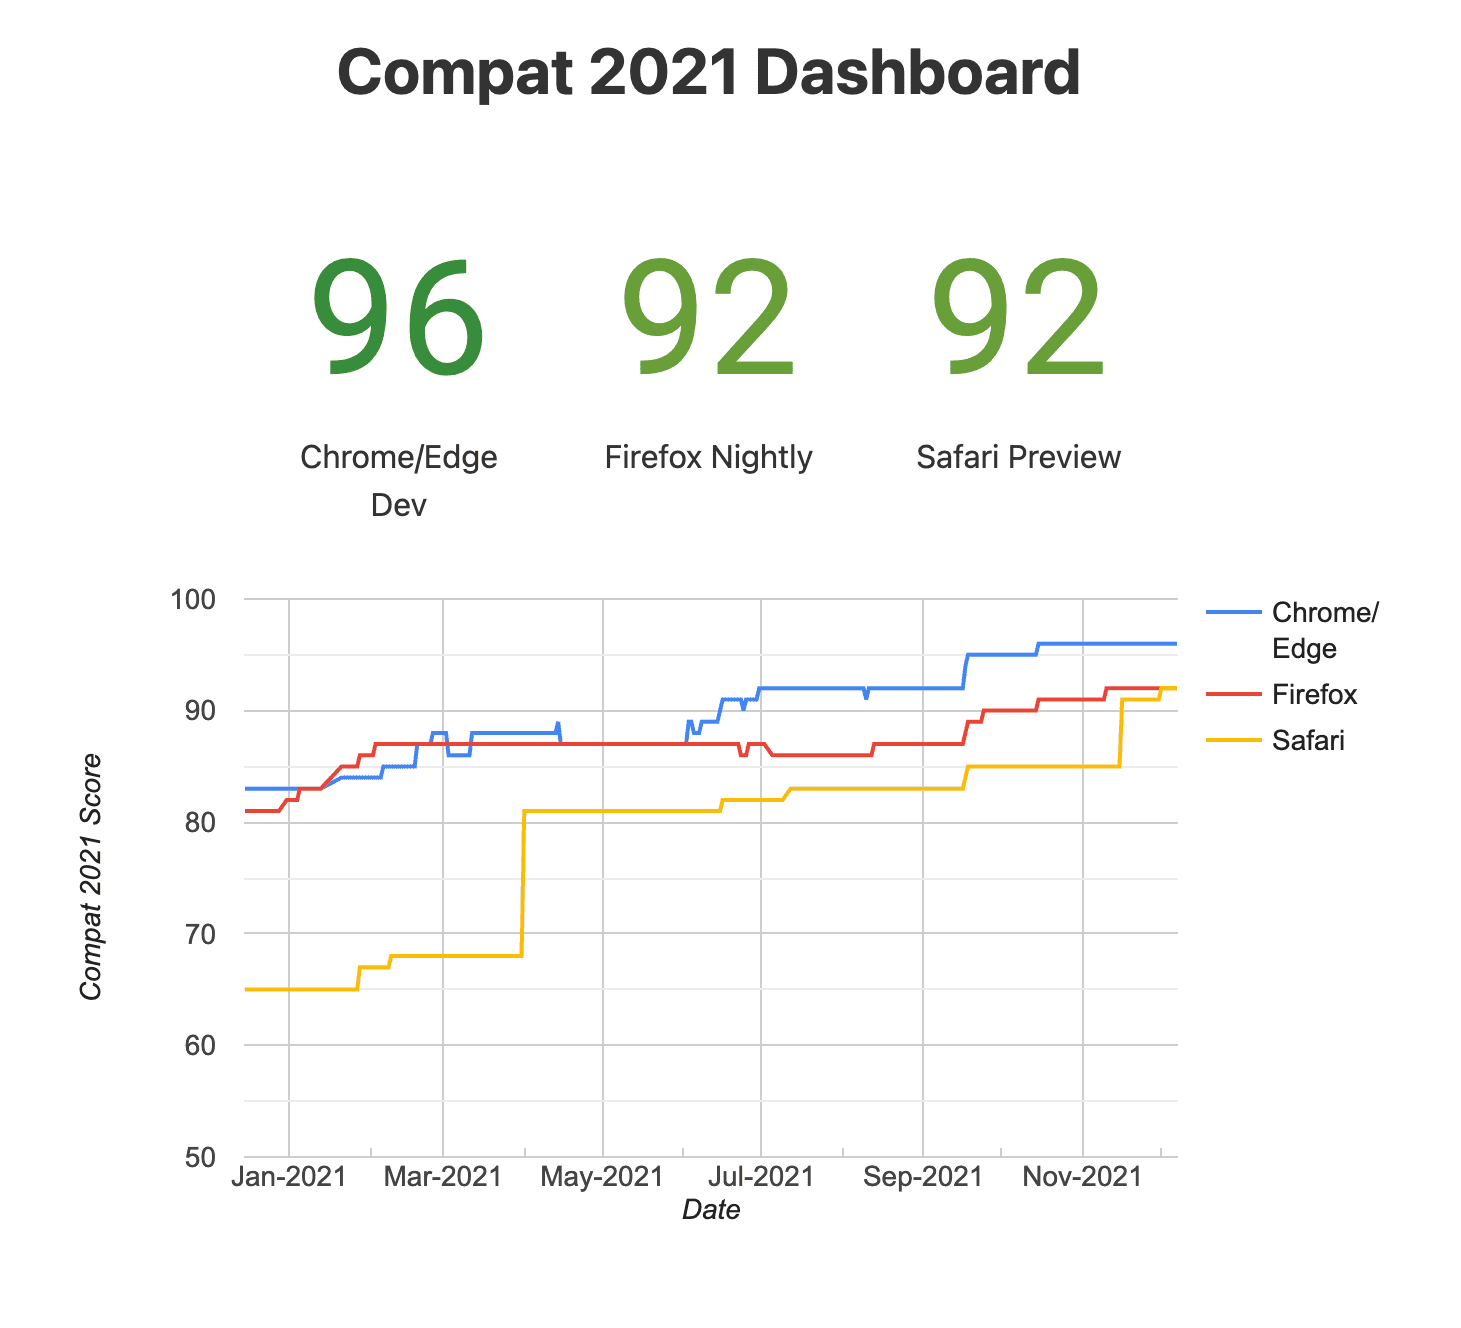 لمحة عن لوحة بيانات Compat
2021 (في المتصفحات التجريبية)